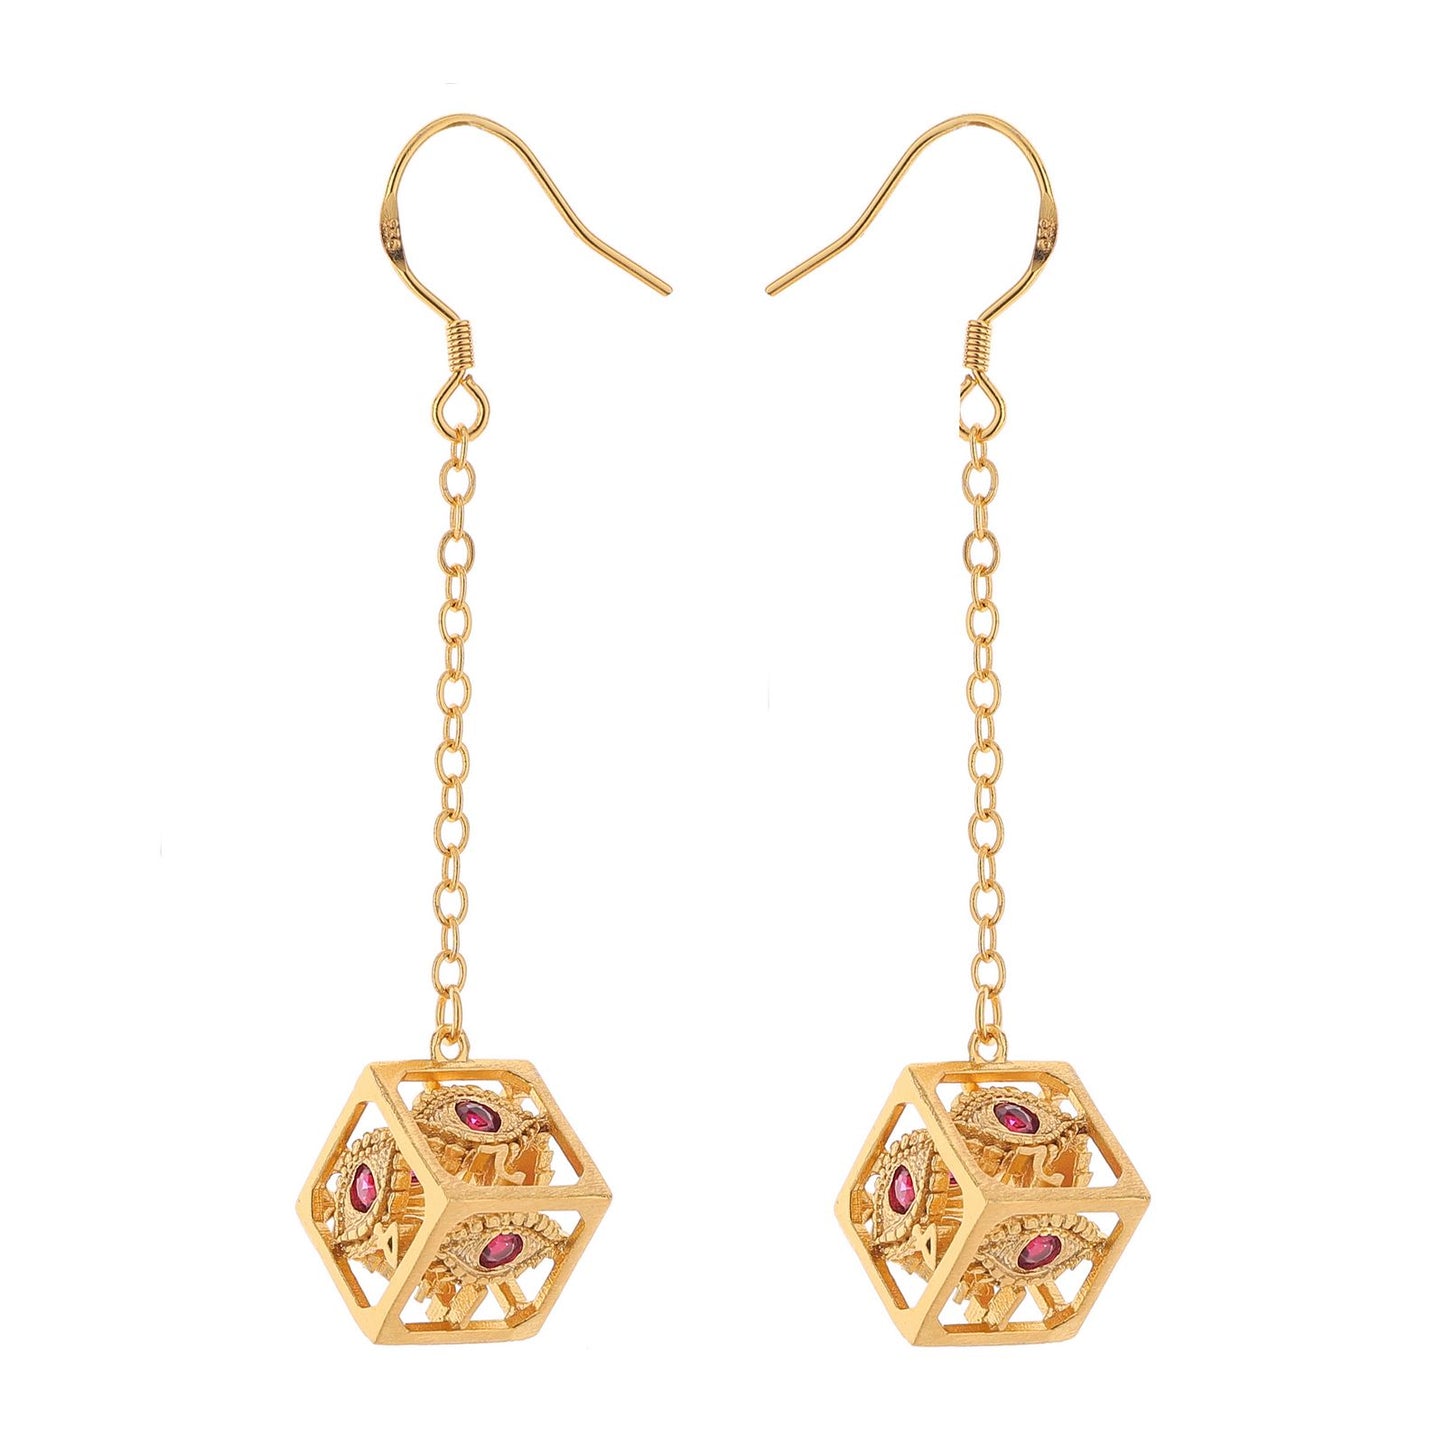 Dragon's eye D6 earrings-Gold w/Red gems